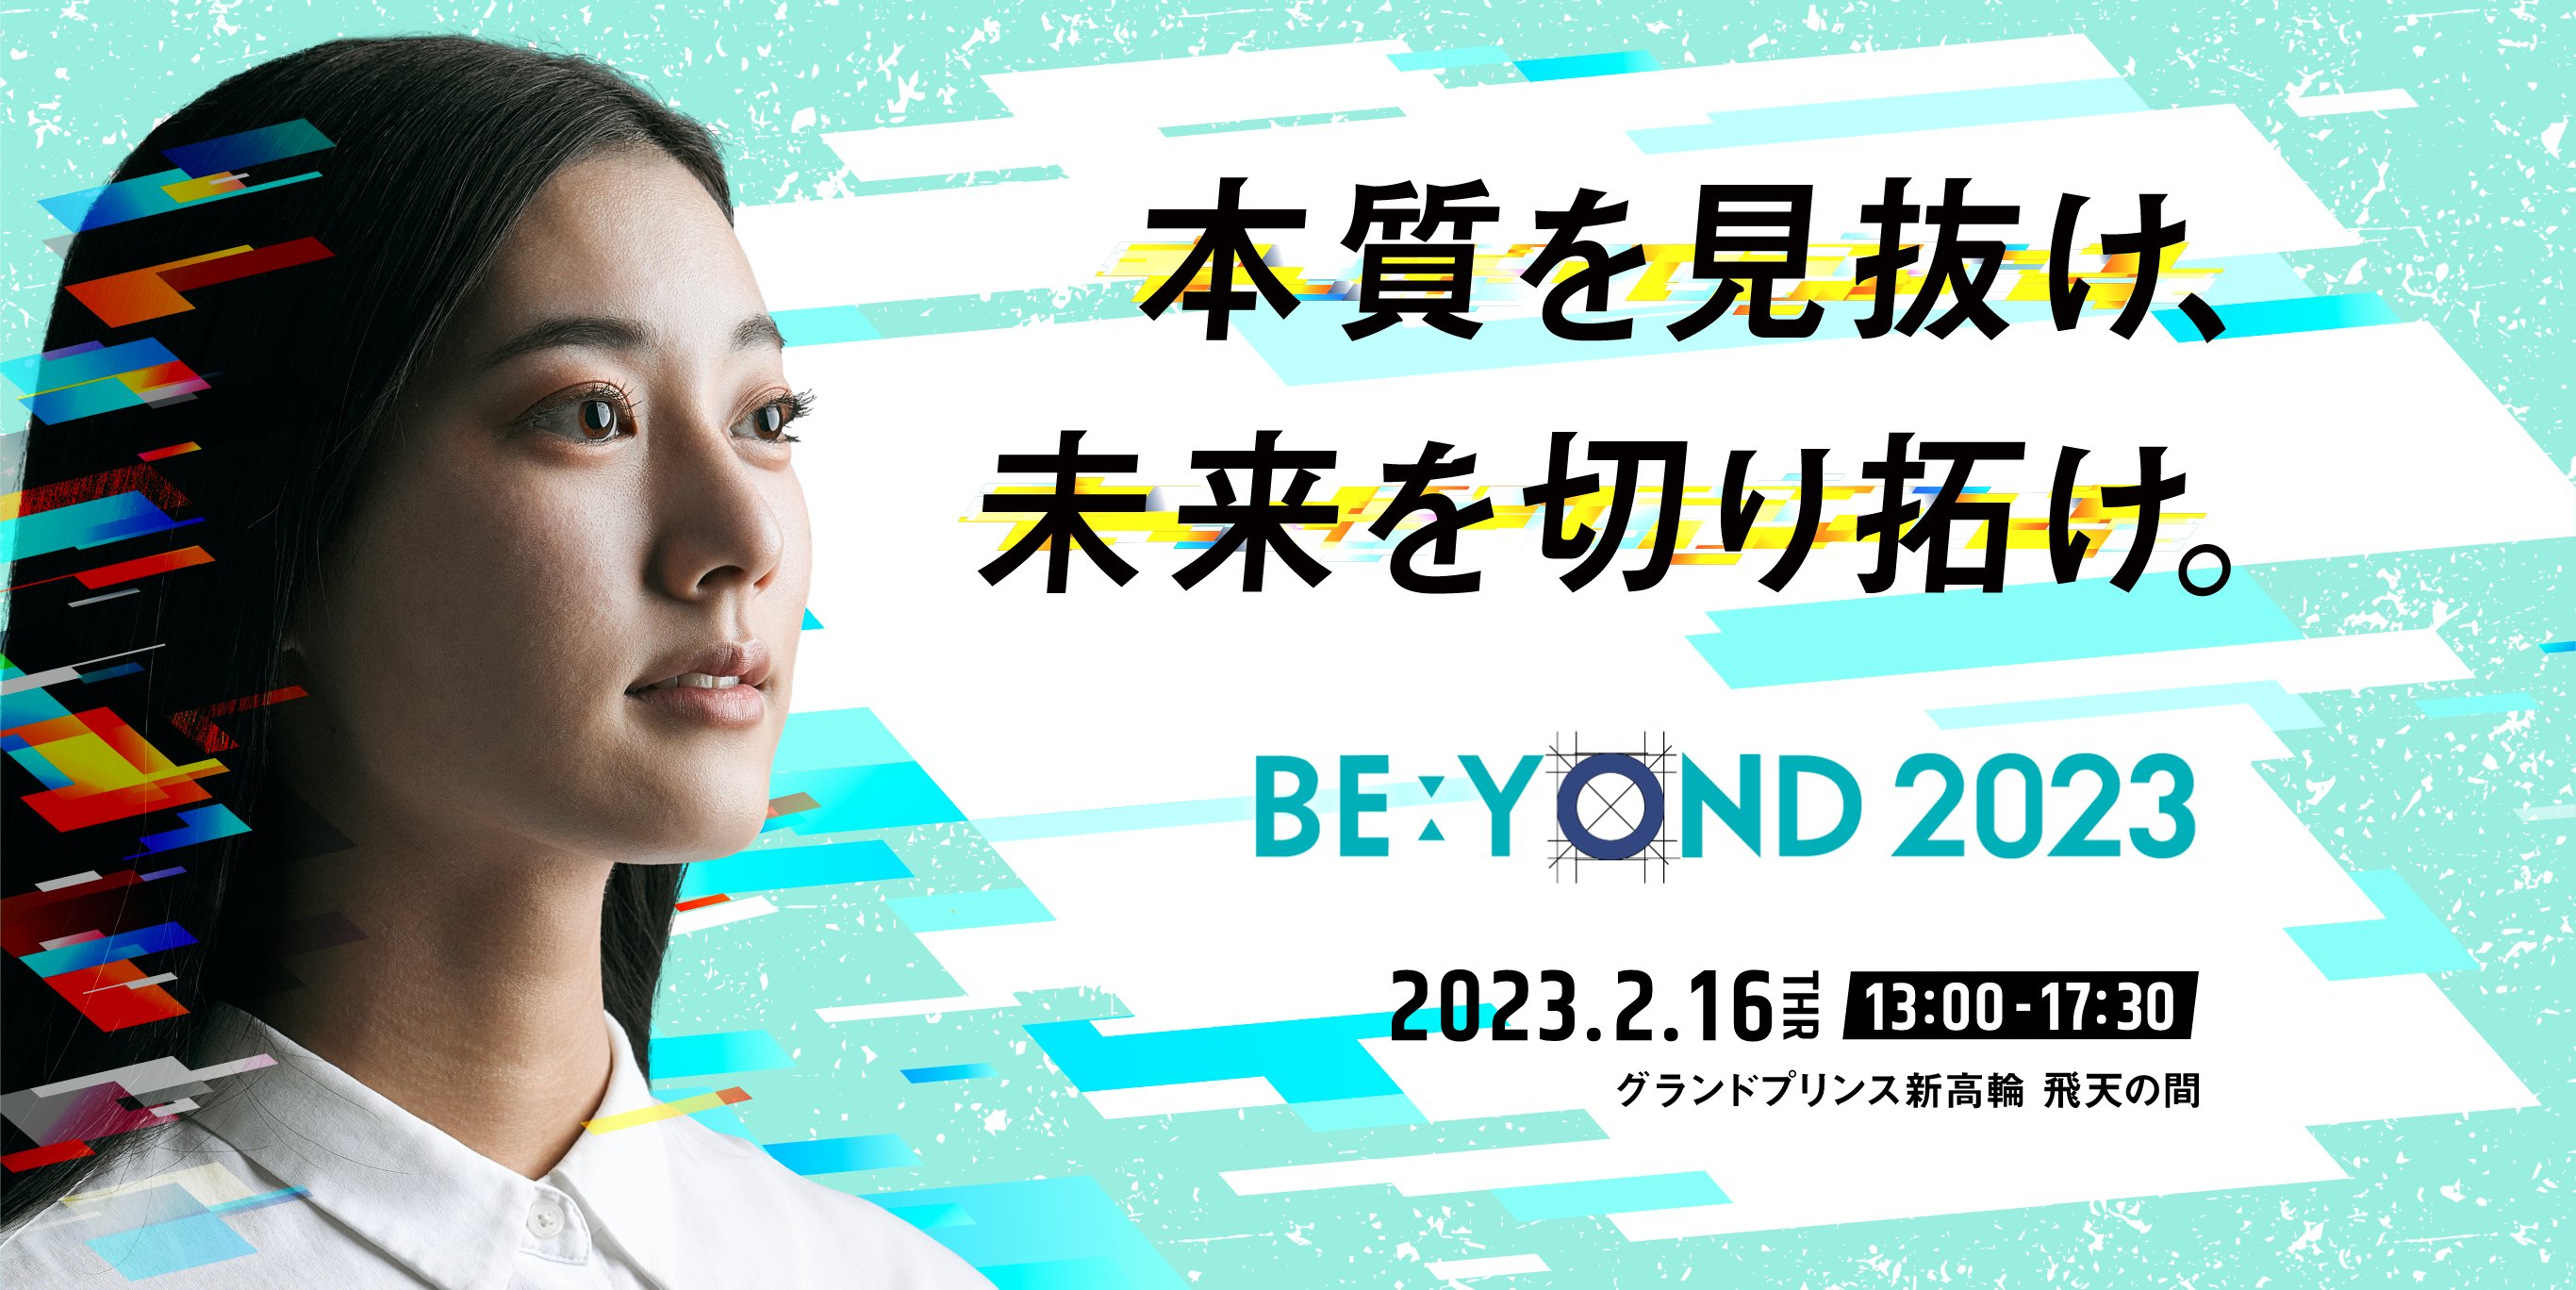 BE:YOND 2023　本質を見抜け、未来を切り拓け。2023.2.16 THU 13:00-17:30　グランドプリンス新高輪 飛天の間